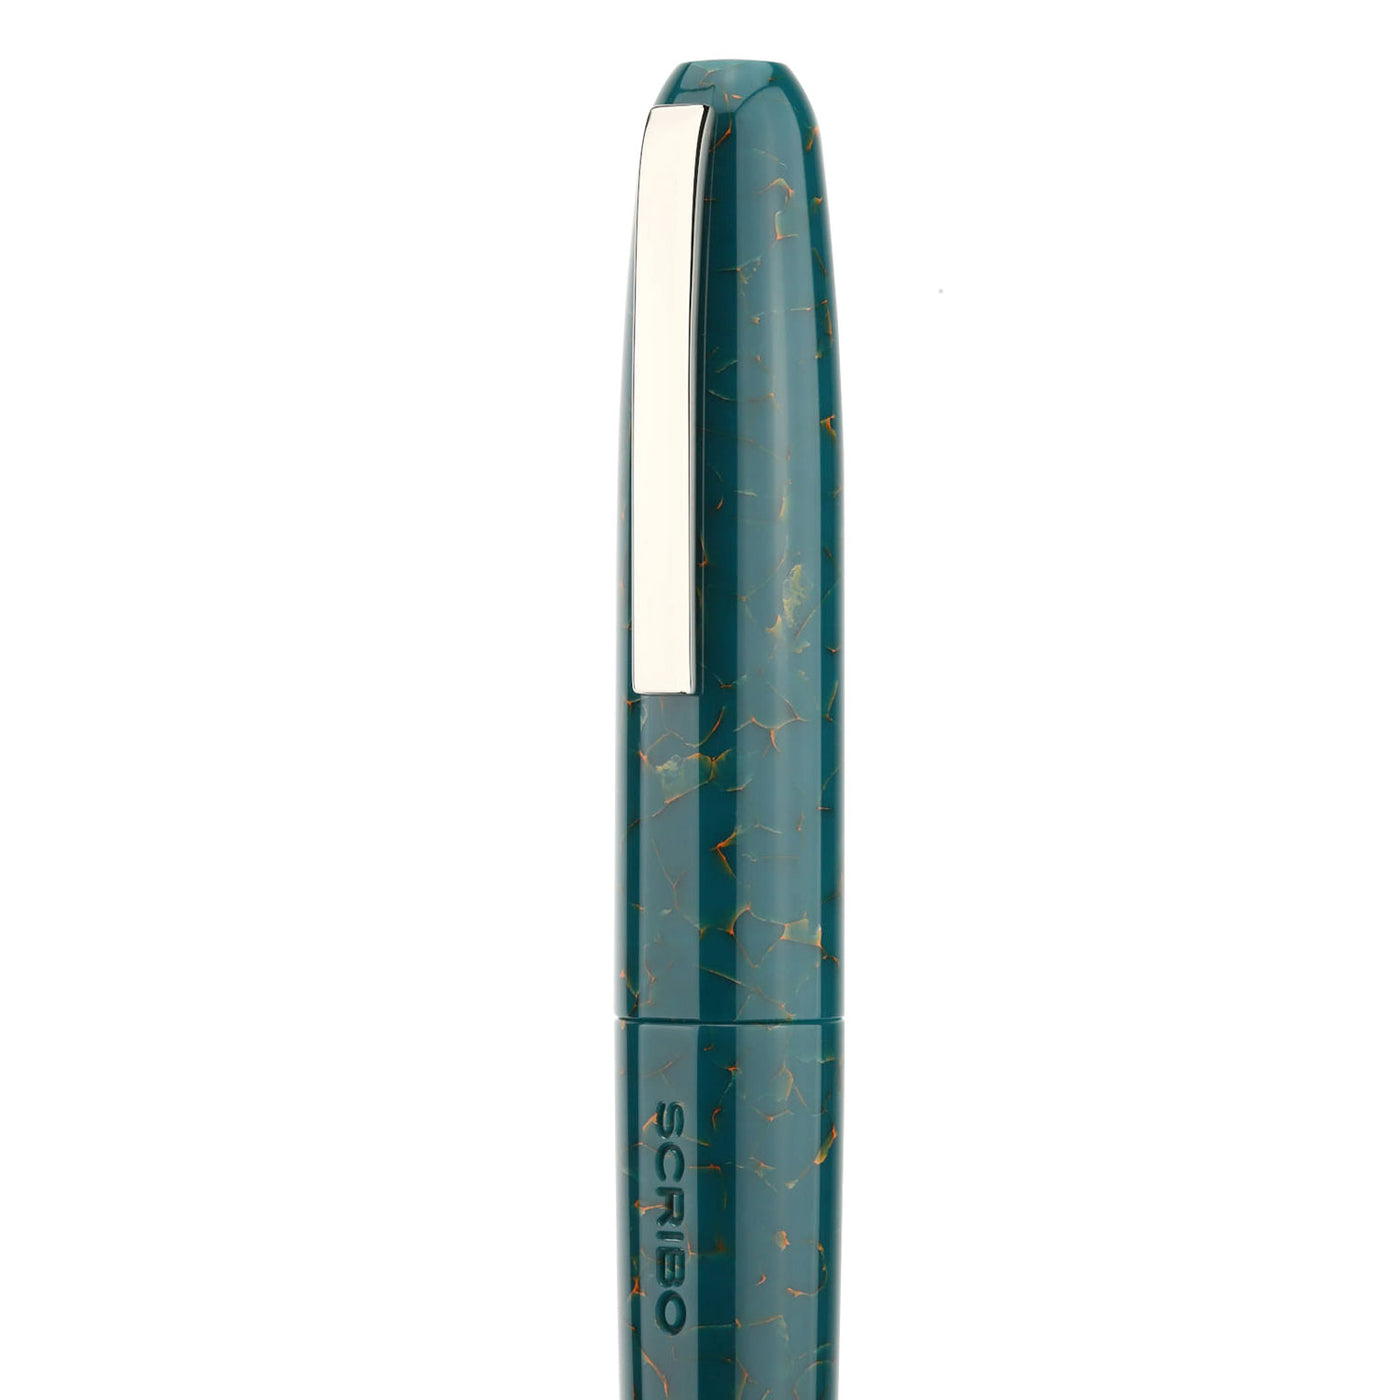 Scribo Piuma Fountain Pen - Impressione (Limited Edition) 5